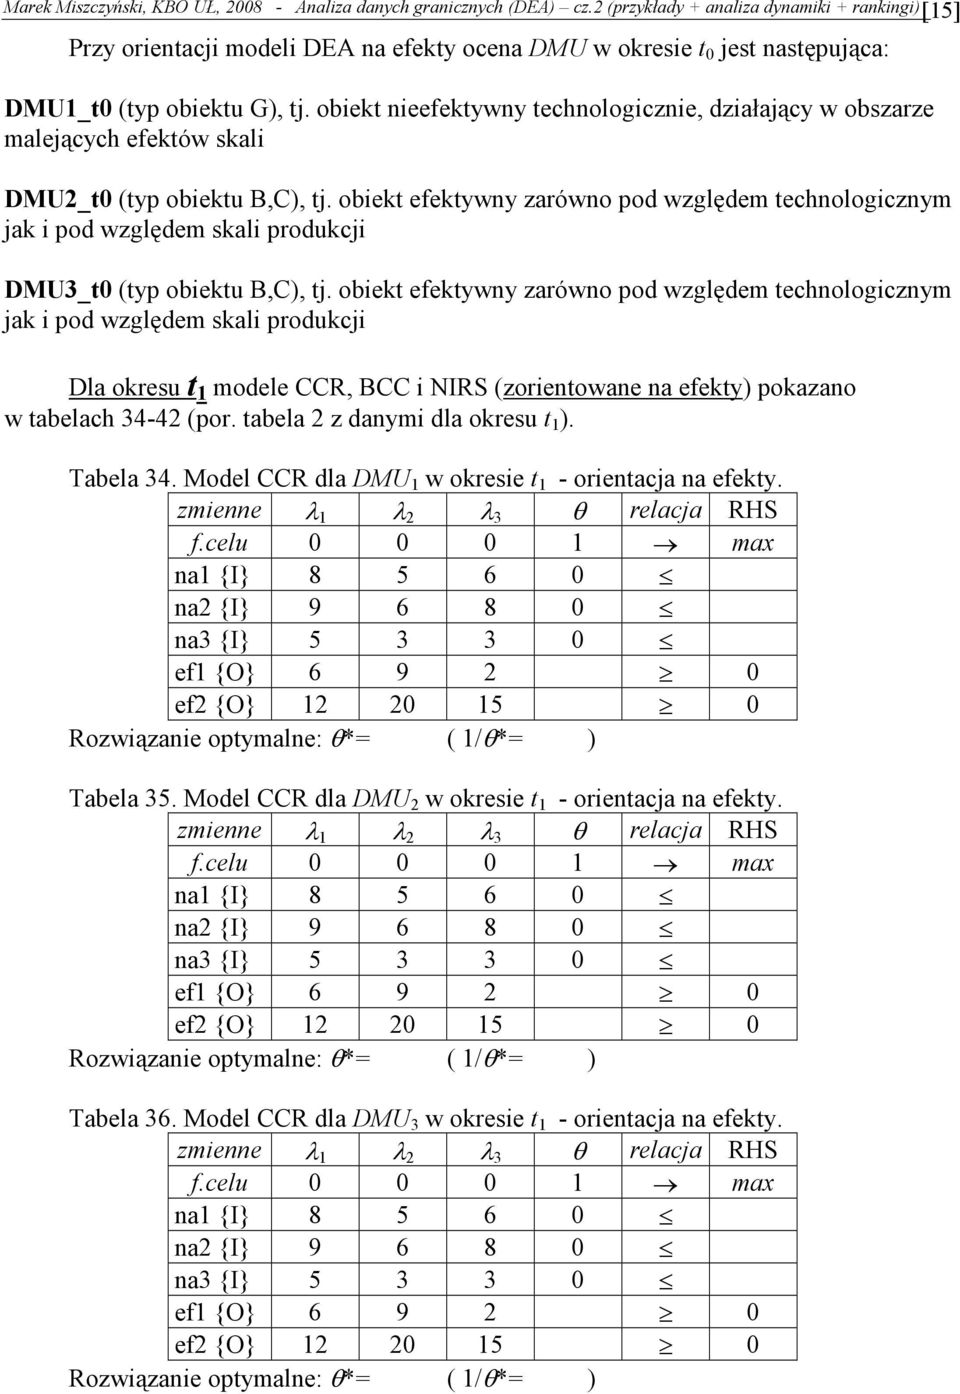 obiek efekw zarówo pod względem echologiczm ak i pod względem skali produkci la okresu modele CCR BCC i NIRS (zorieowae a efek) pokazao w abelach 34-42 (por. abela 2 z dami okresu ). Tabela 34.